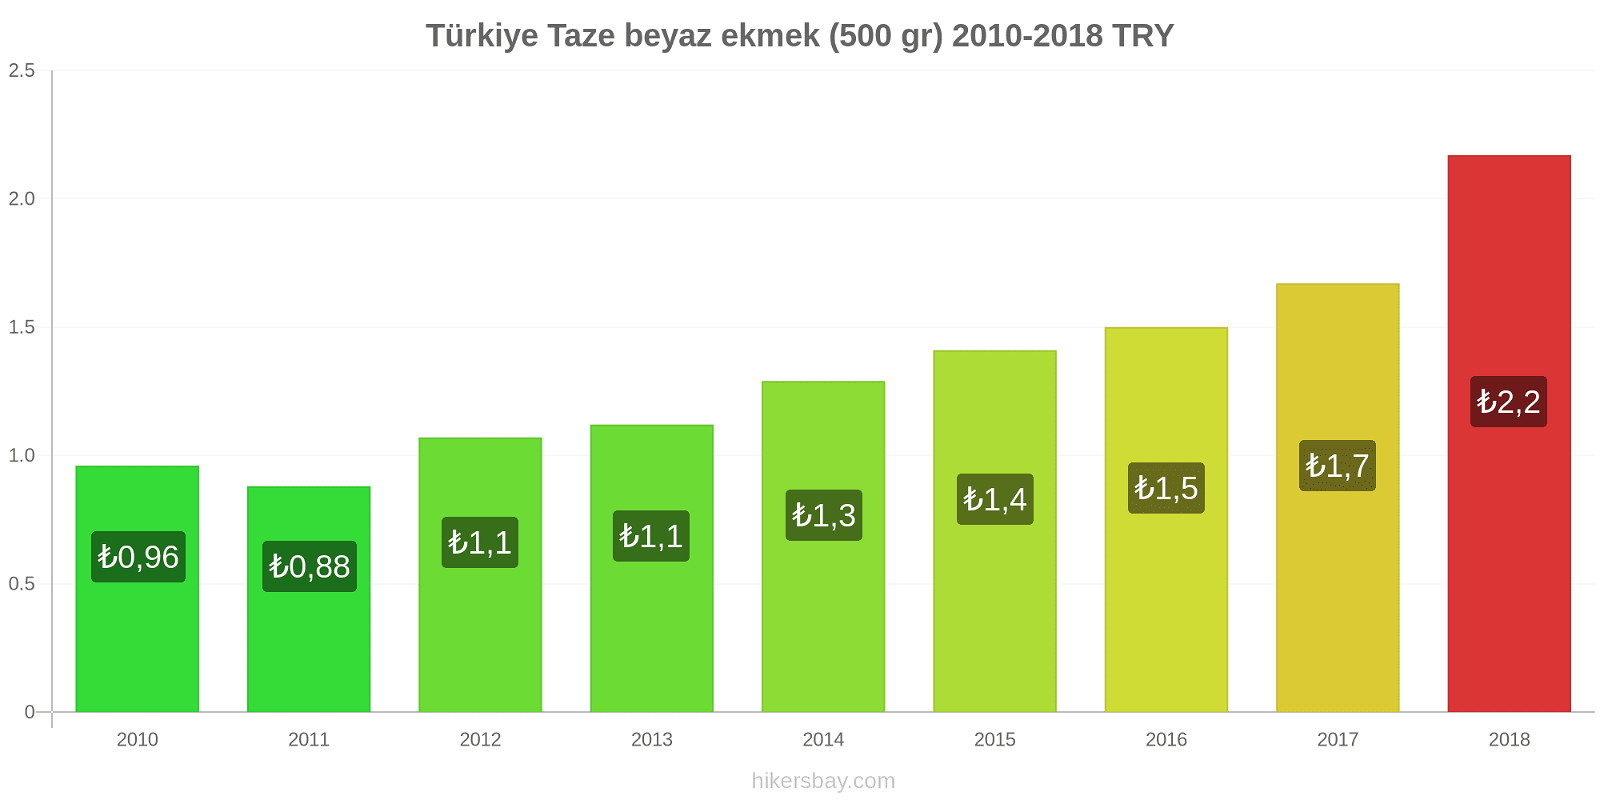 Türkiye fiyat değişiklikleri Taze beyaz ekmek (500 gr) hikersbay.com